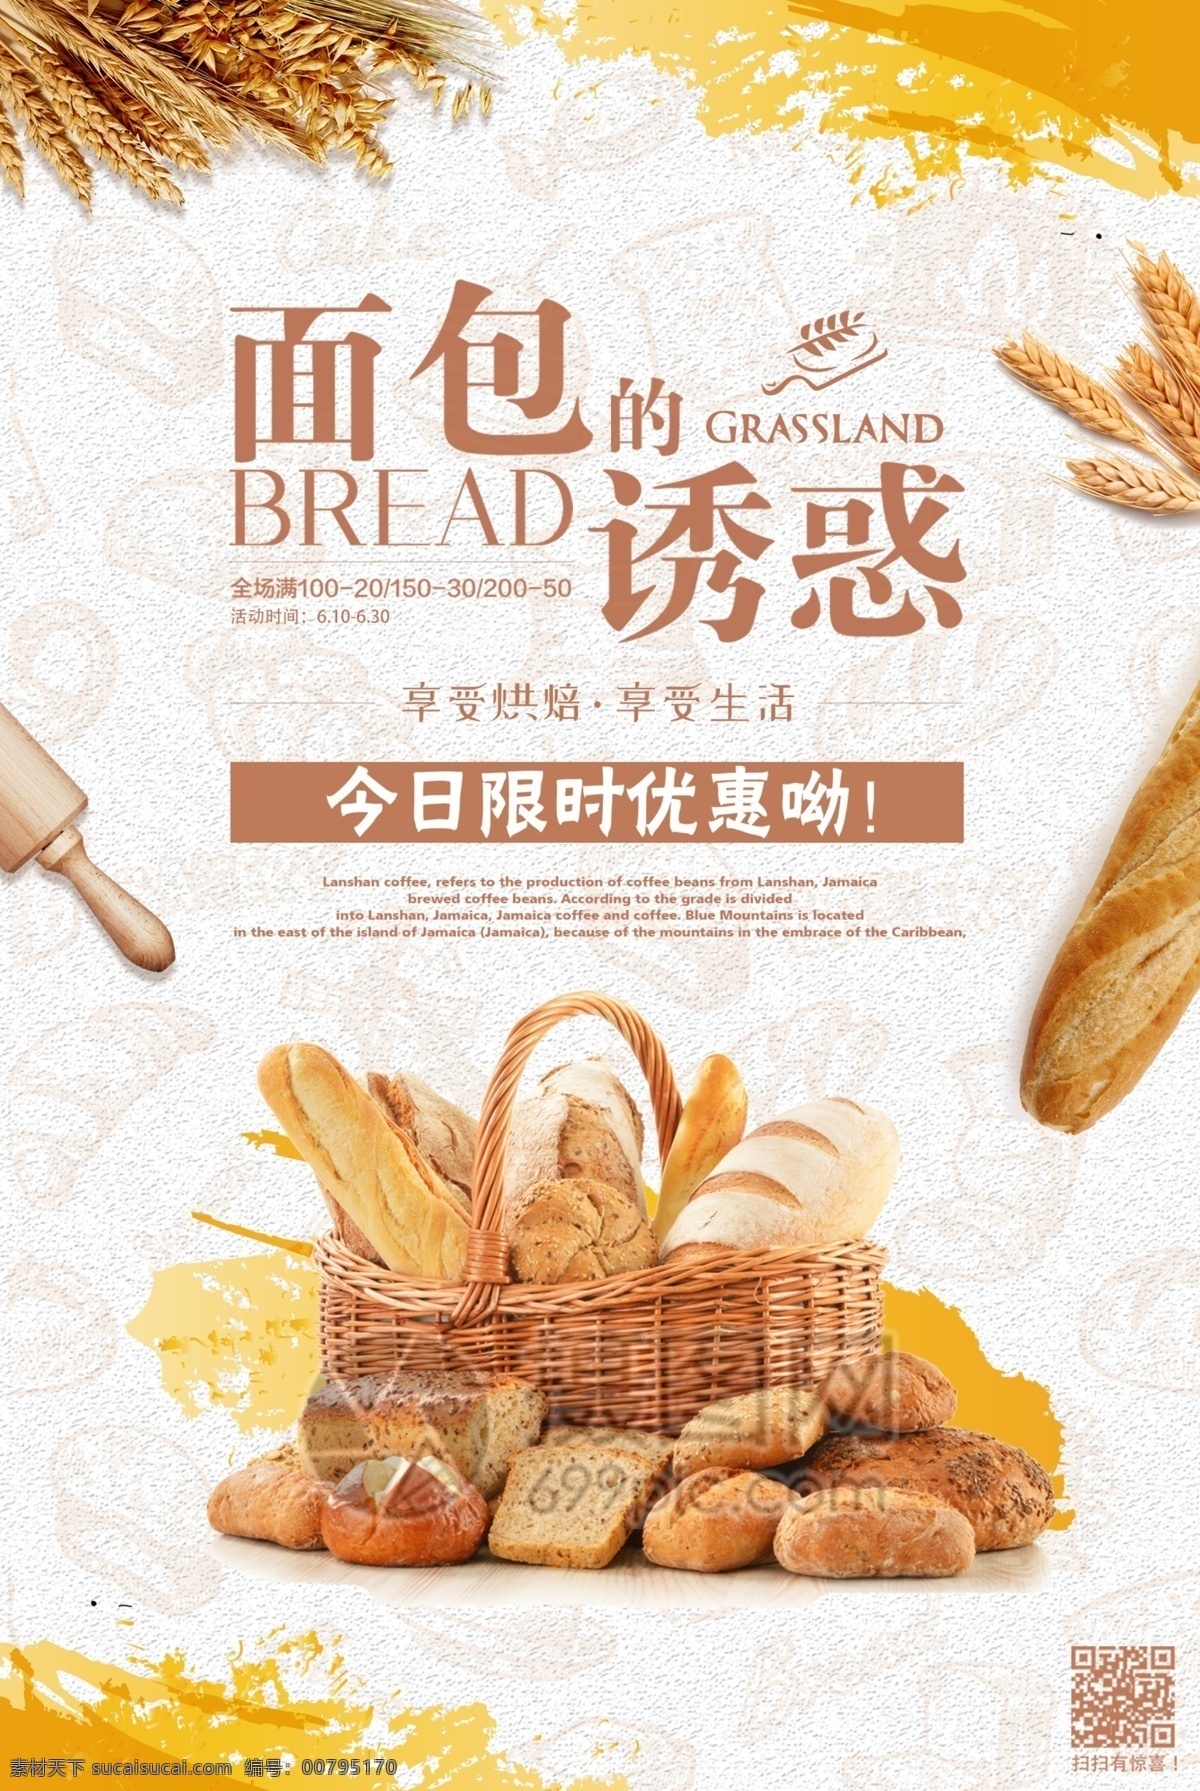 面包烘焙海报 面包 烘焙 点心 甜点 美食海报 面包烘焙 海报 美食餐饮 面包的诱惑